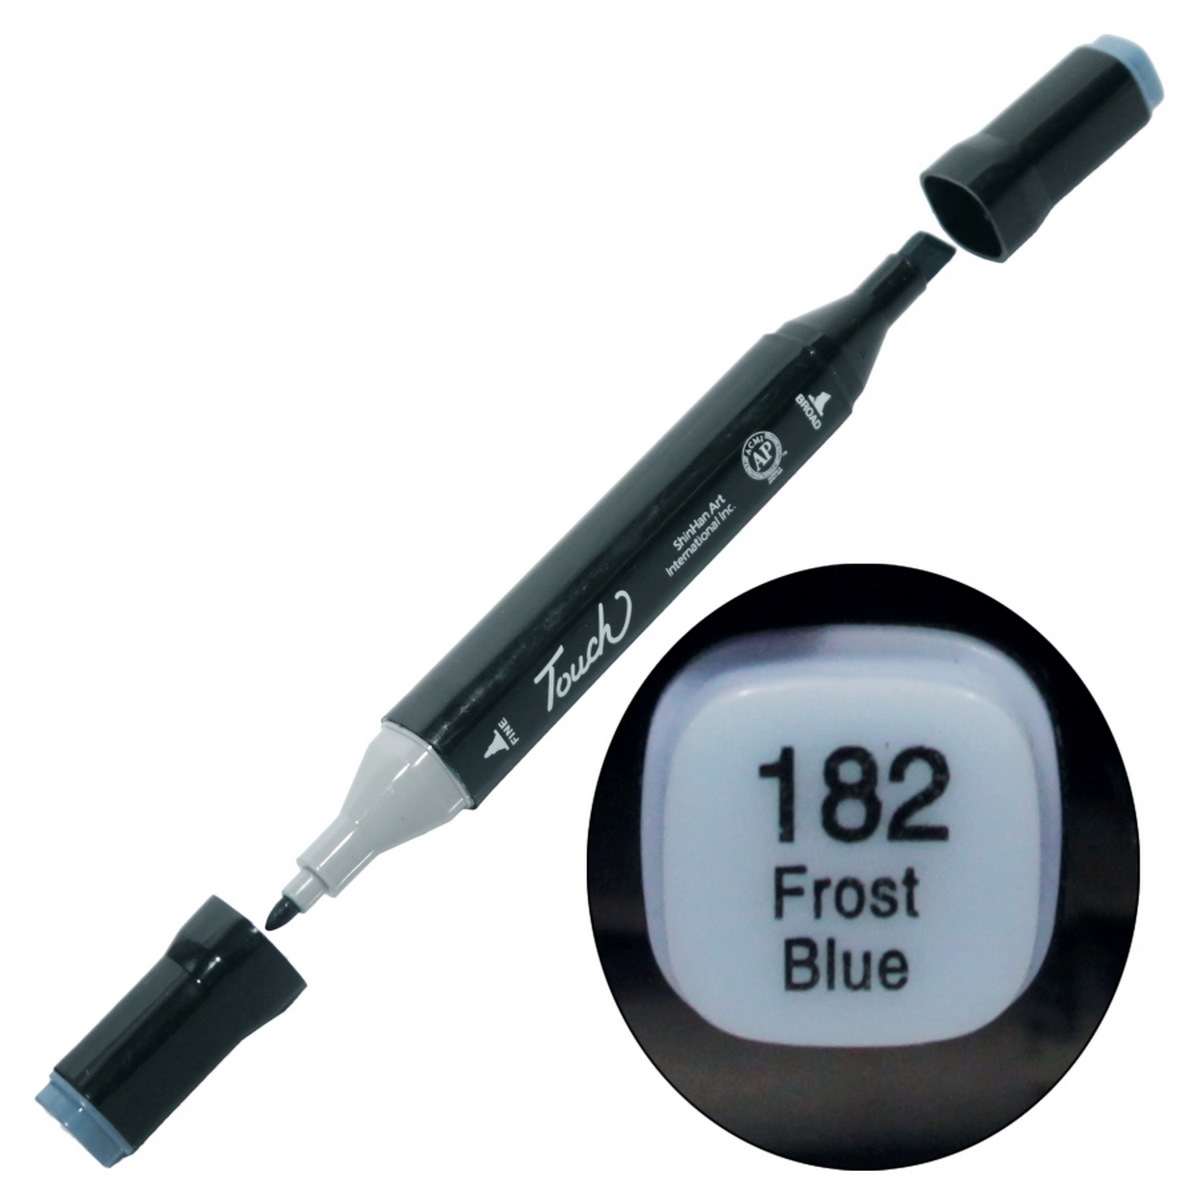 Touch Marker 2in1 Pen 182 Frost Blue TM-182